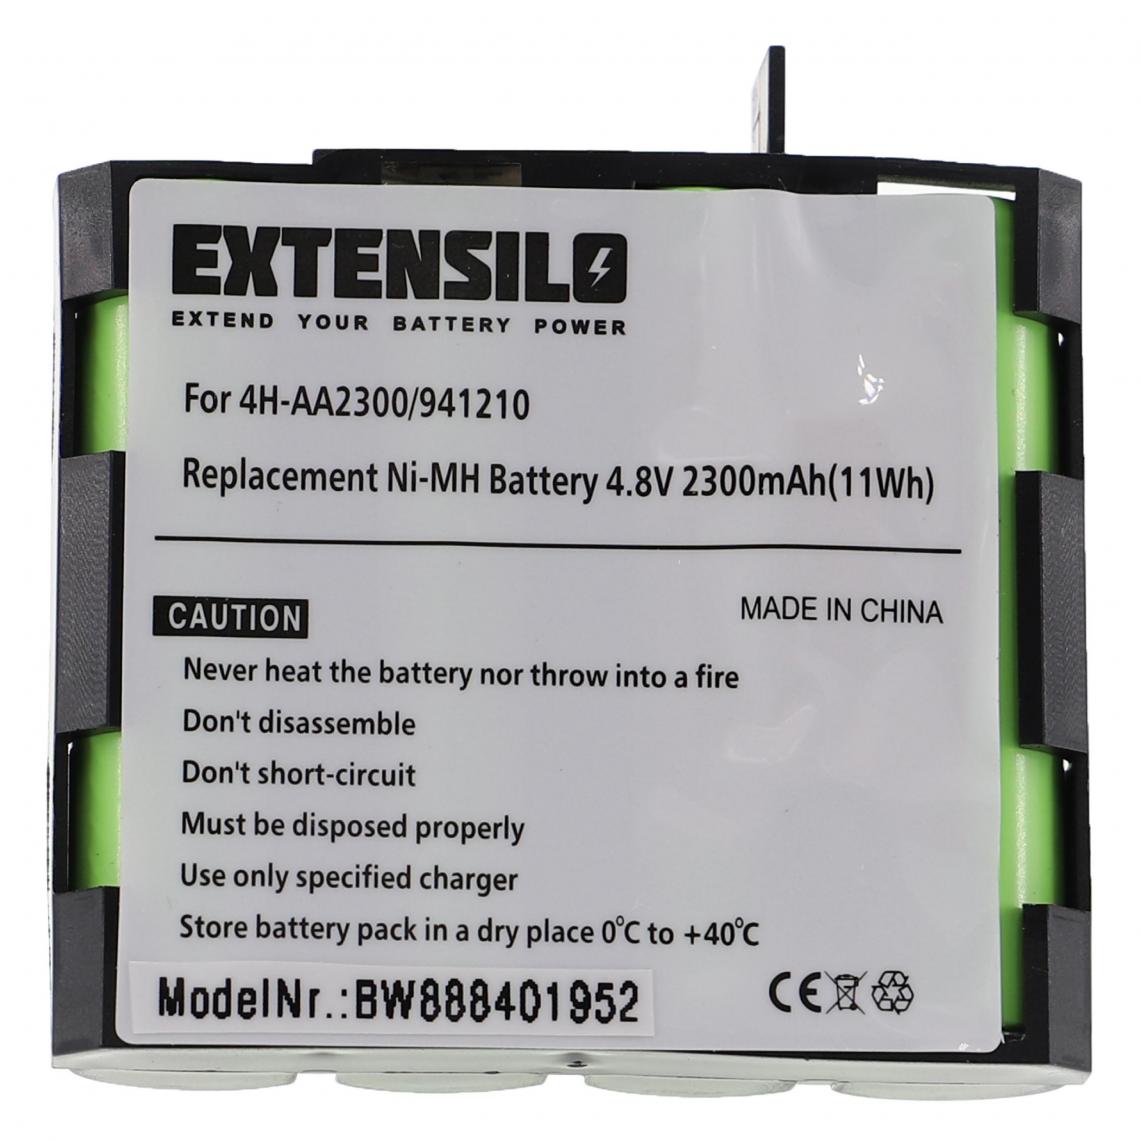 Vhbw - EXTENSILO Batterie remplacement pour Compex 941210, 941213, 4H-AA1500, 4H-AA2000 pour appareil médical (2300mAh, 4,8V, NiMH) - Piles spécifiques